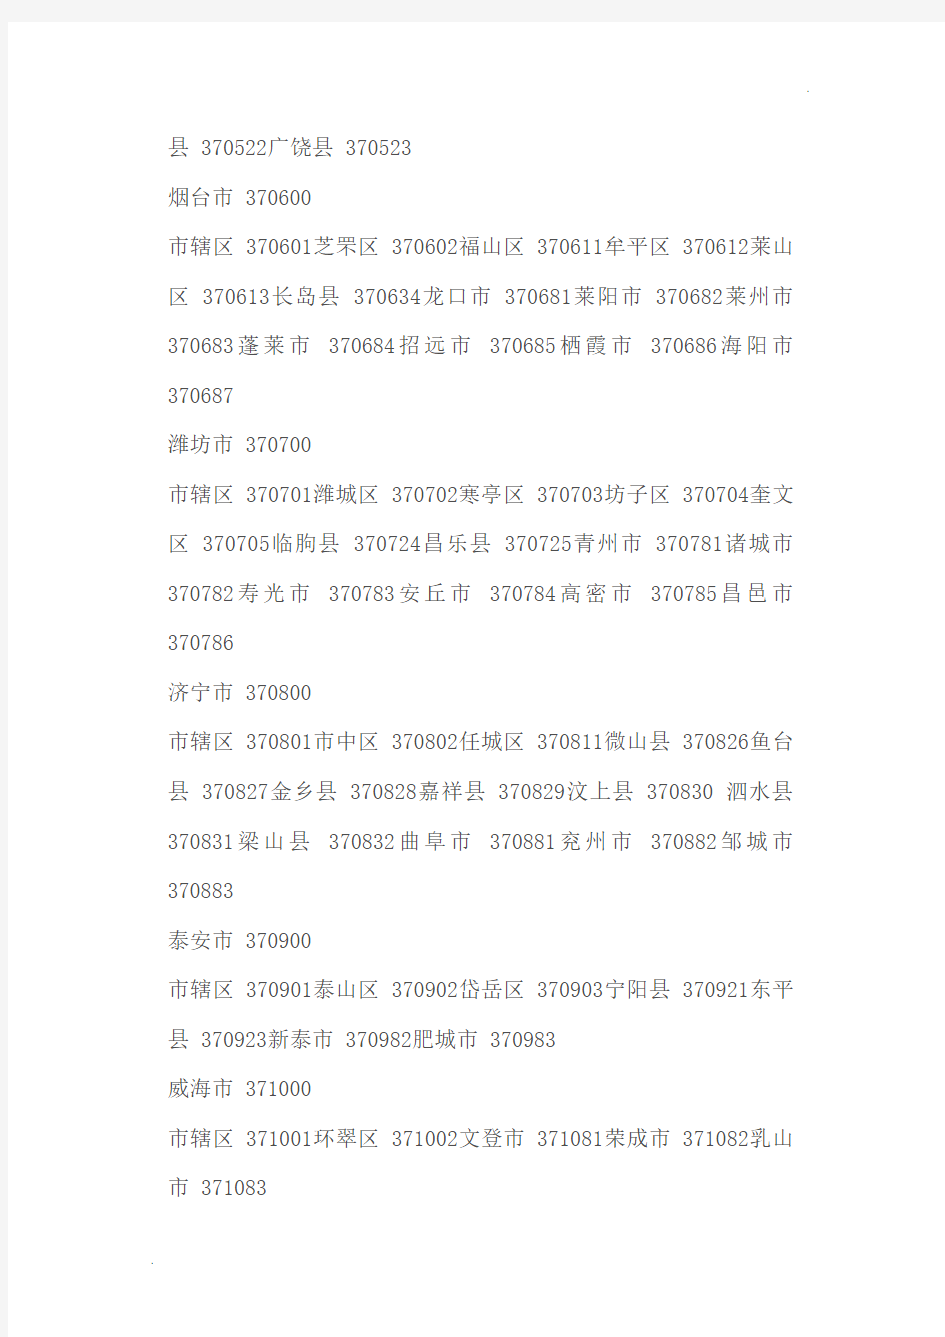 山东省行政区划代码一览表